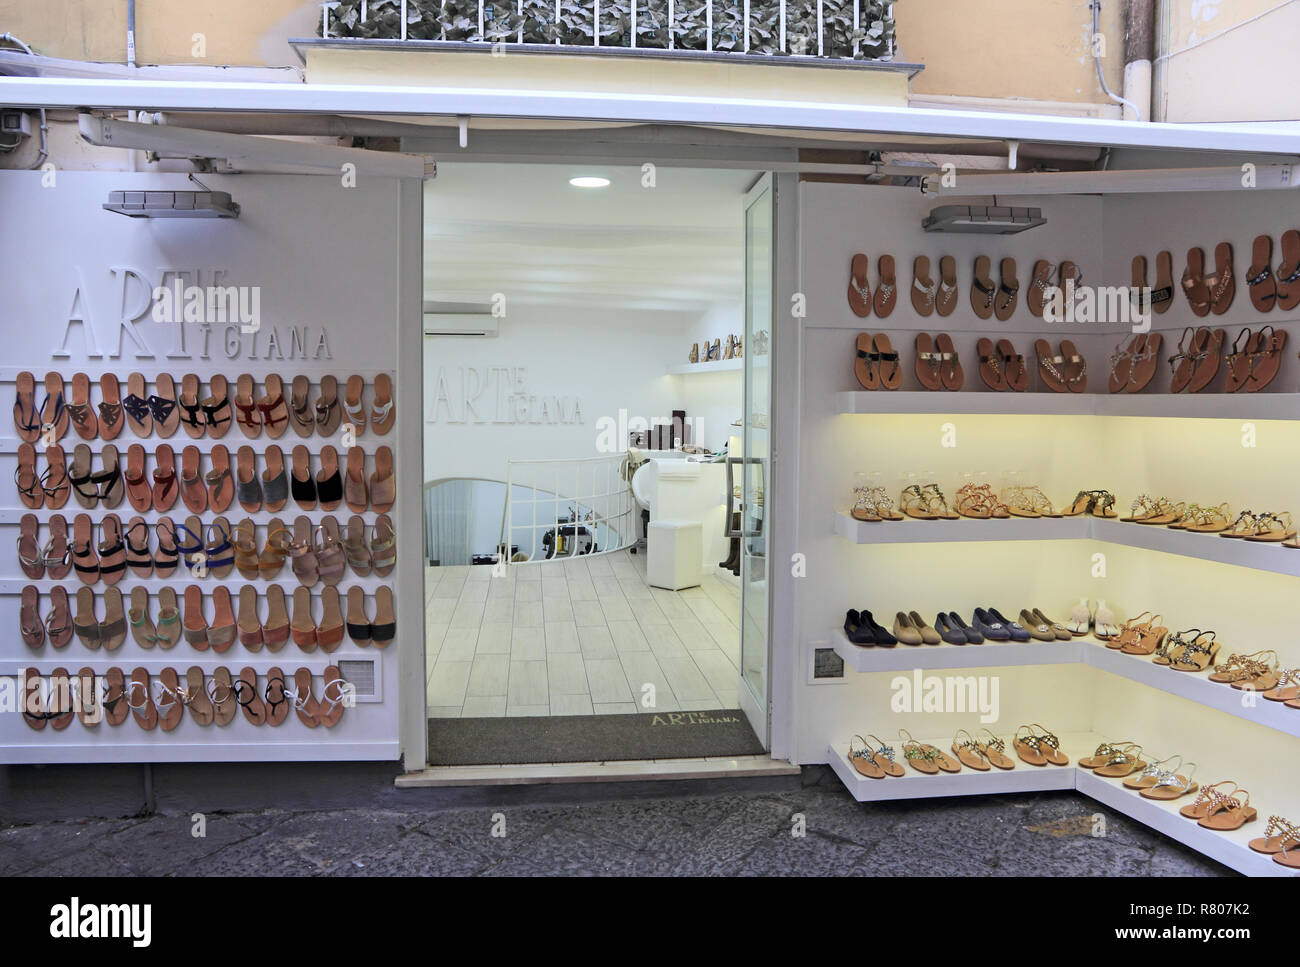 Arte Artigiana specialist sandal shop, Sorrento Stock Photo